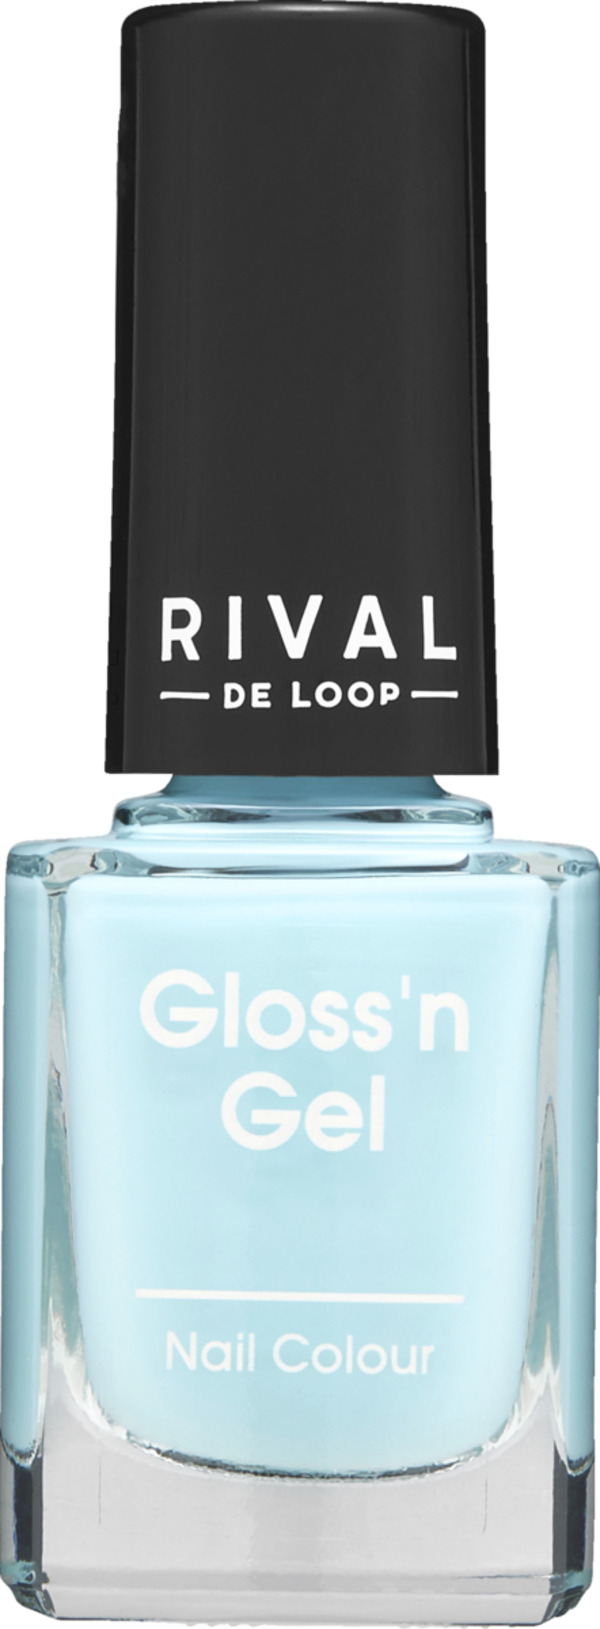 Bild 1 von RIVAL DE LOOP Gloss'n Gel Nail Colour 06